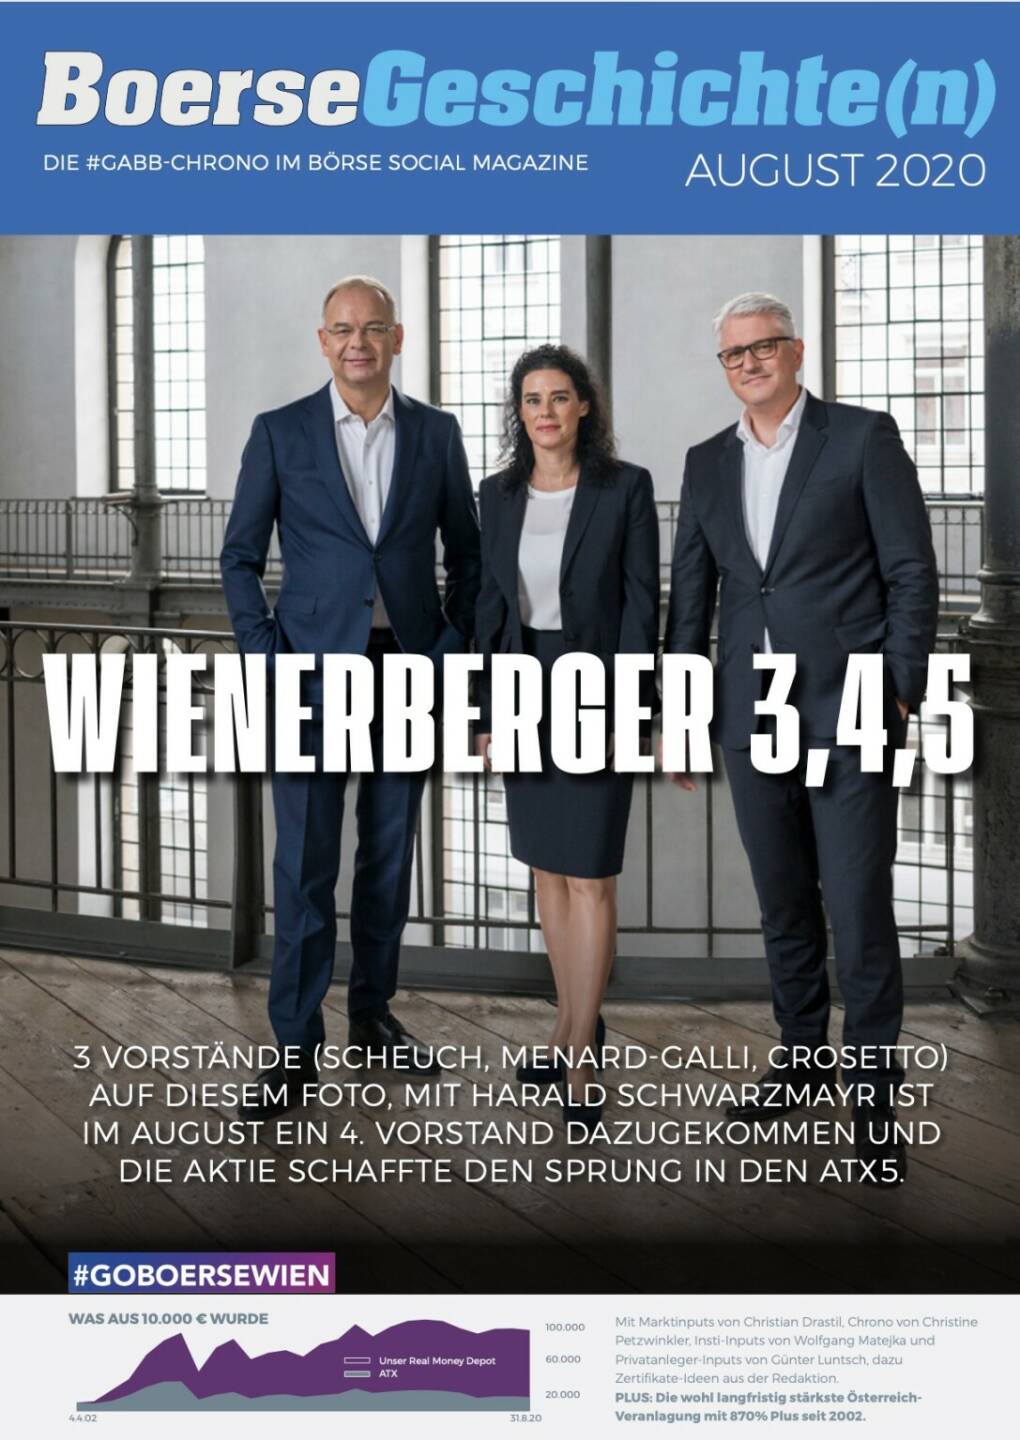 Börsegeschichte(n) August 2020 - Wienerberger 3,4,5 - 3 Vorstände (Scheuch, Menard-Galli, Crosetto) auf diesem Foto, mit Harald Schwarzmayr ist im August ein 4. Vorstand dazugekommen und die Aktie schaffte den Sprung in den ATX5.